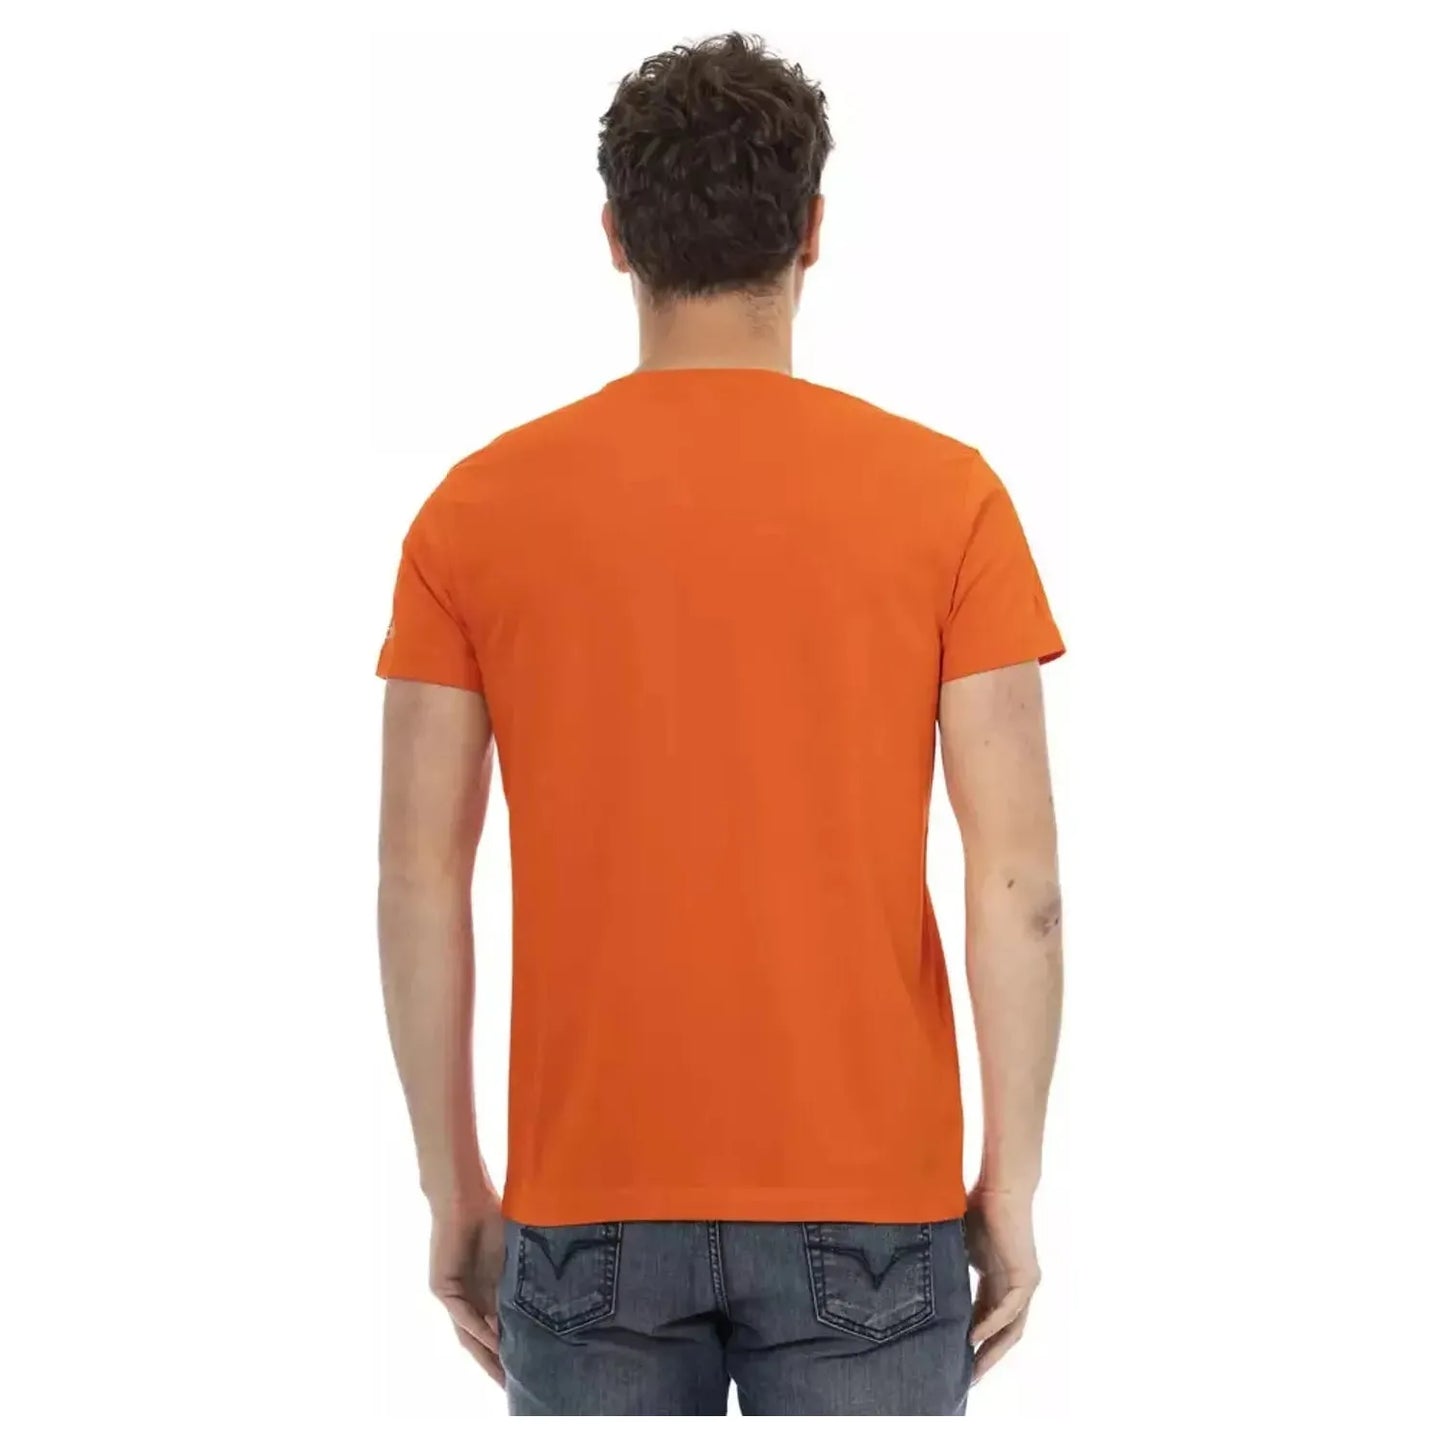 Trussardi Action Sunset Hue Cotton Blend Tee orange-cotton-t-shirt-24 product-22813-1577627789-23-219495a2-e05.webp